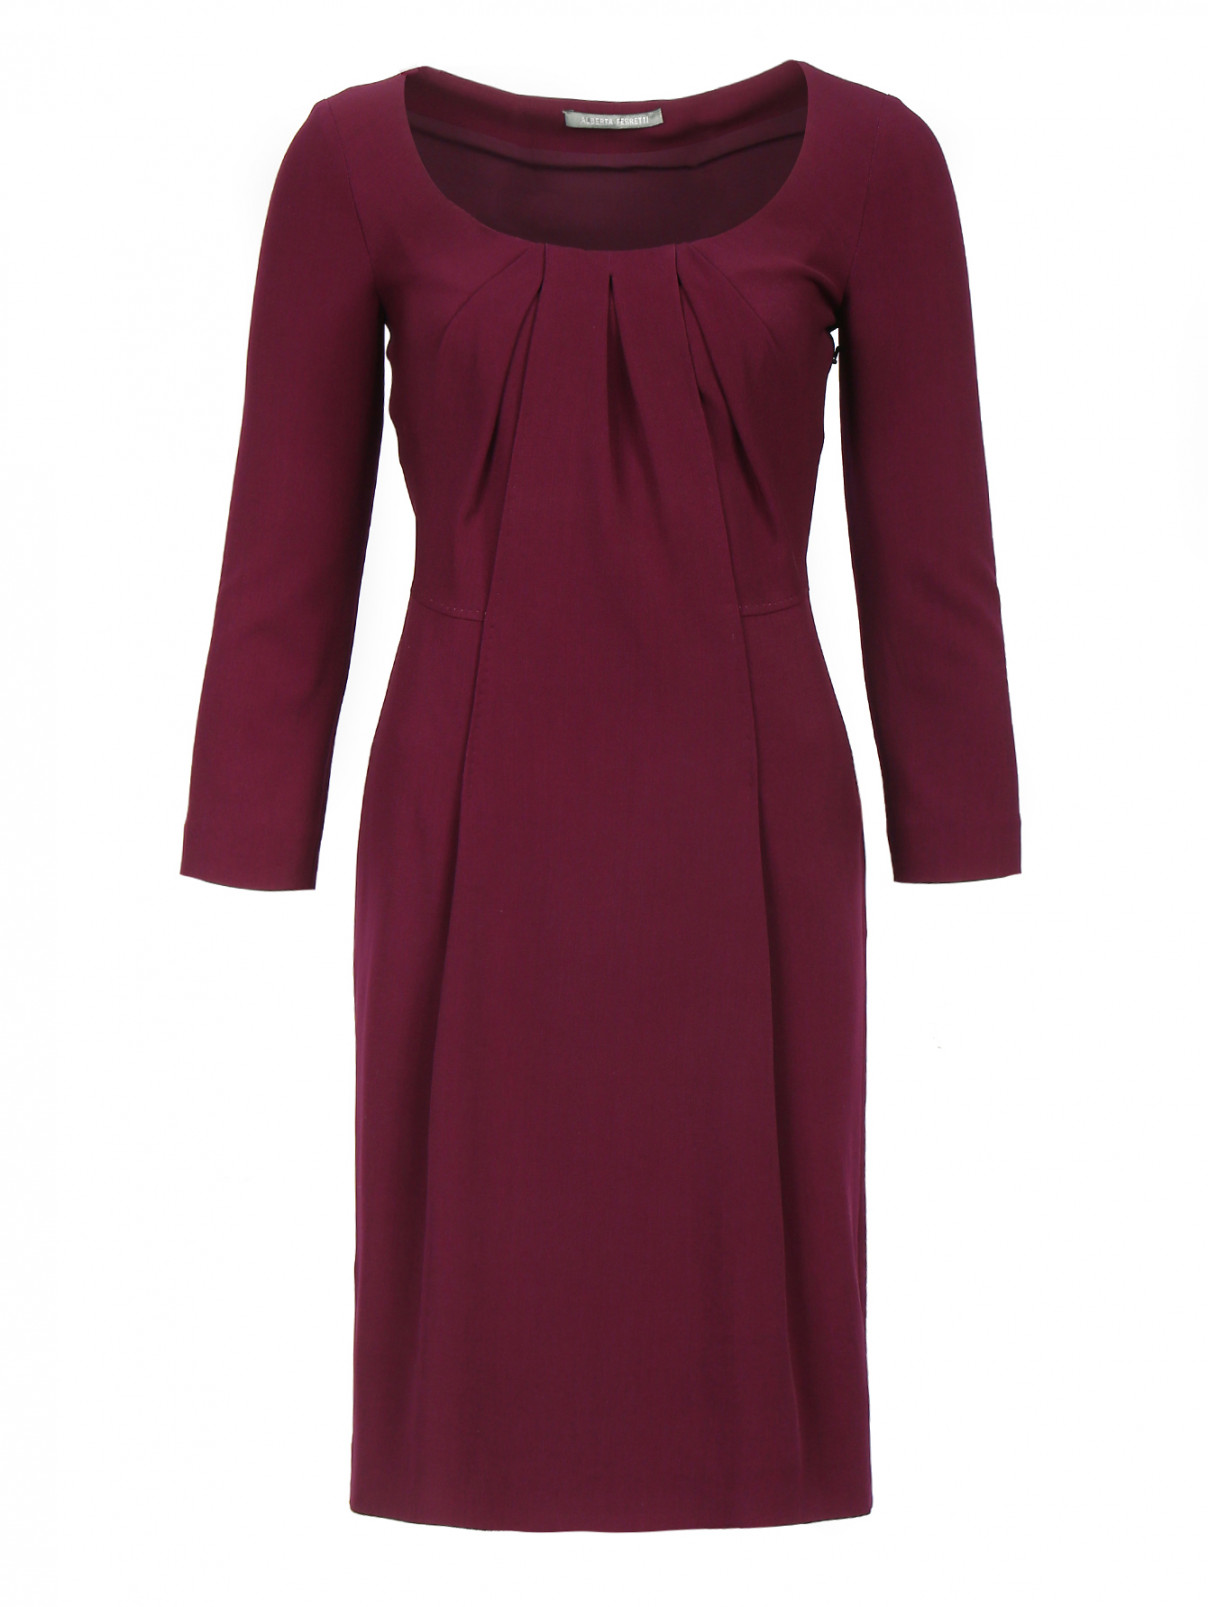 Платье-футляр из шерсти и шелка Alberta Ferretti  –  Общий вид  – Цвет:  Фиолетовый